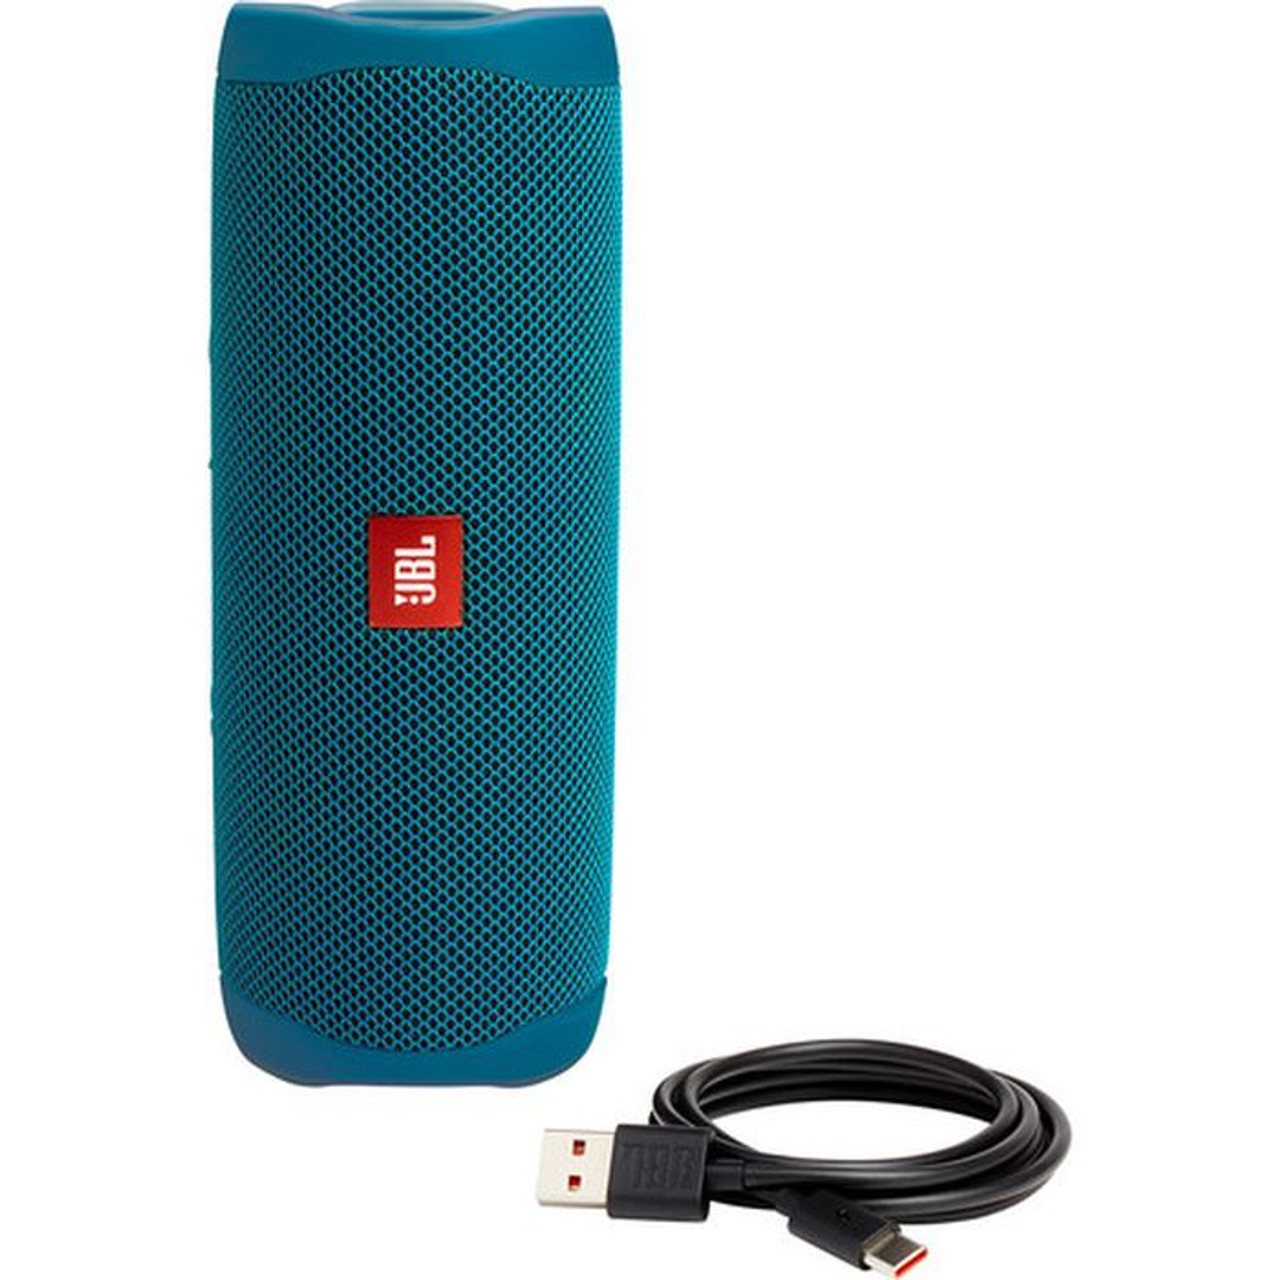 Parade Flip JBL Deal - Blue Bluetooth Eco Refurbished Speaker 5 -Certified JBLFLIP5ECOBLUAM-Z